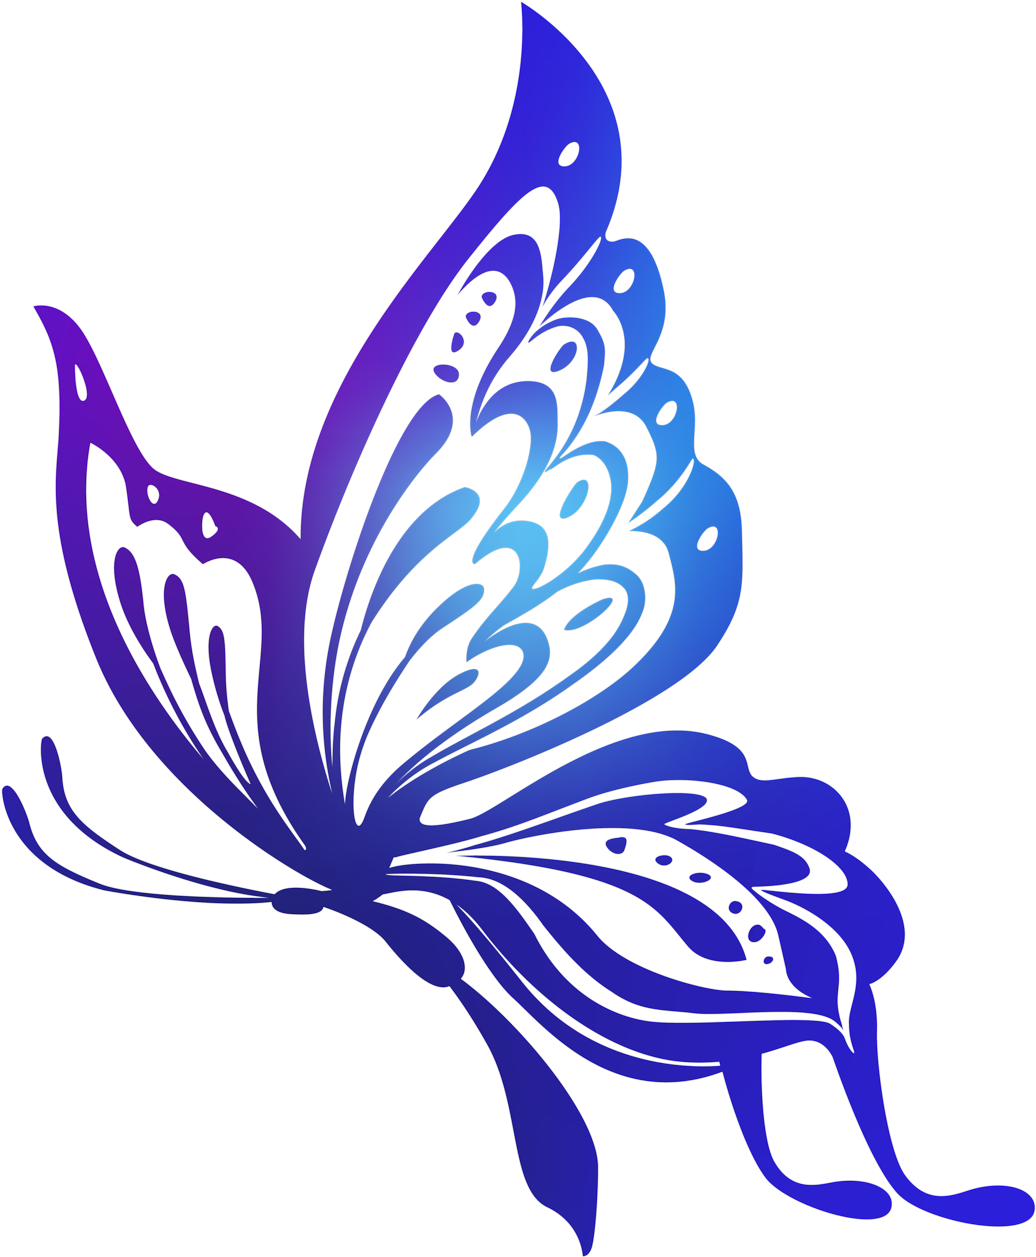 Без цветной рисунок. Изображение бабочки. Силуэт бабочки. Бабочки клипарт. Красивый векторные бабочки.